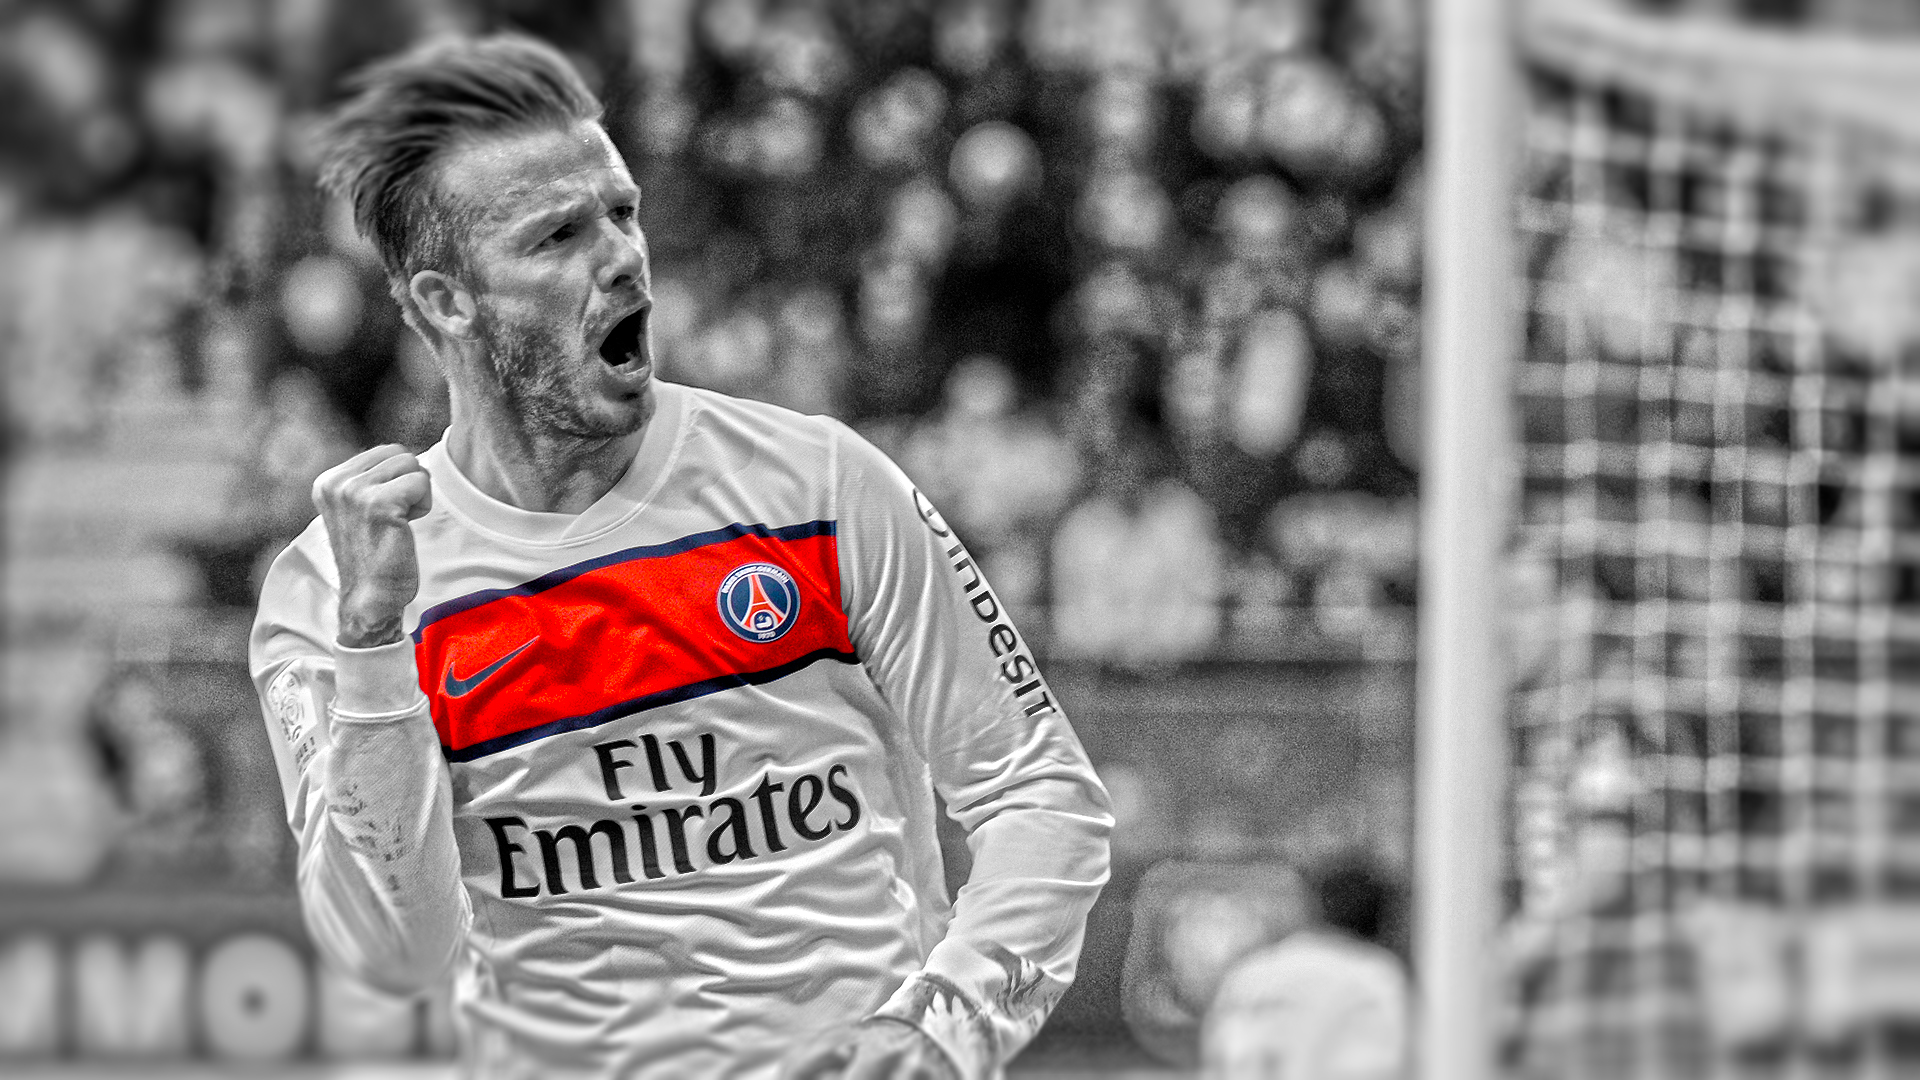 Téléchargez gratuitement l'image David Beckham, Des Sports, Football, Paris Saint Germain Fc sur le bureau de votre PC